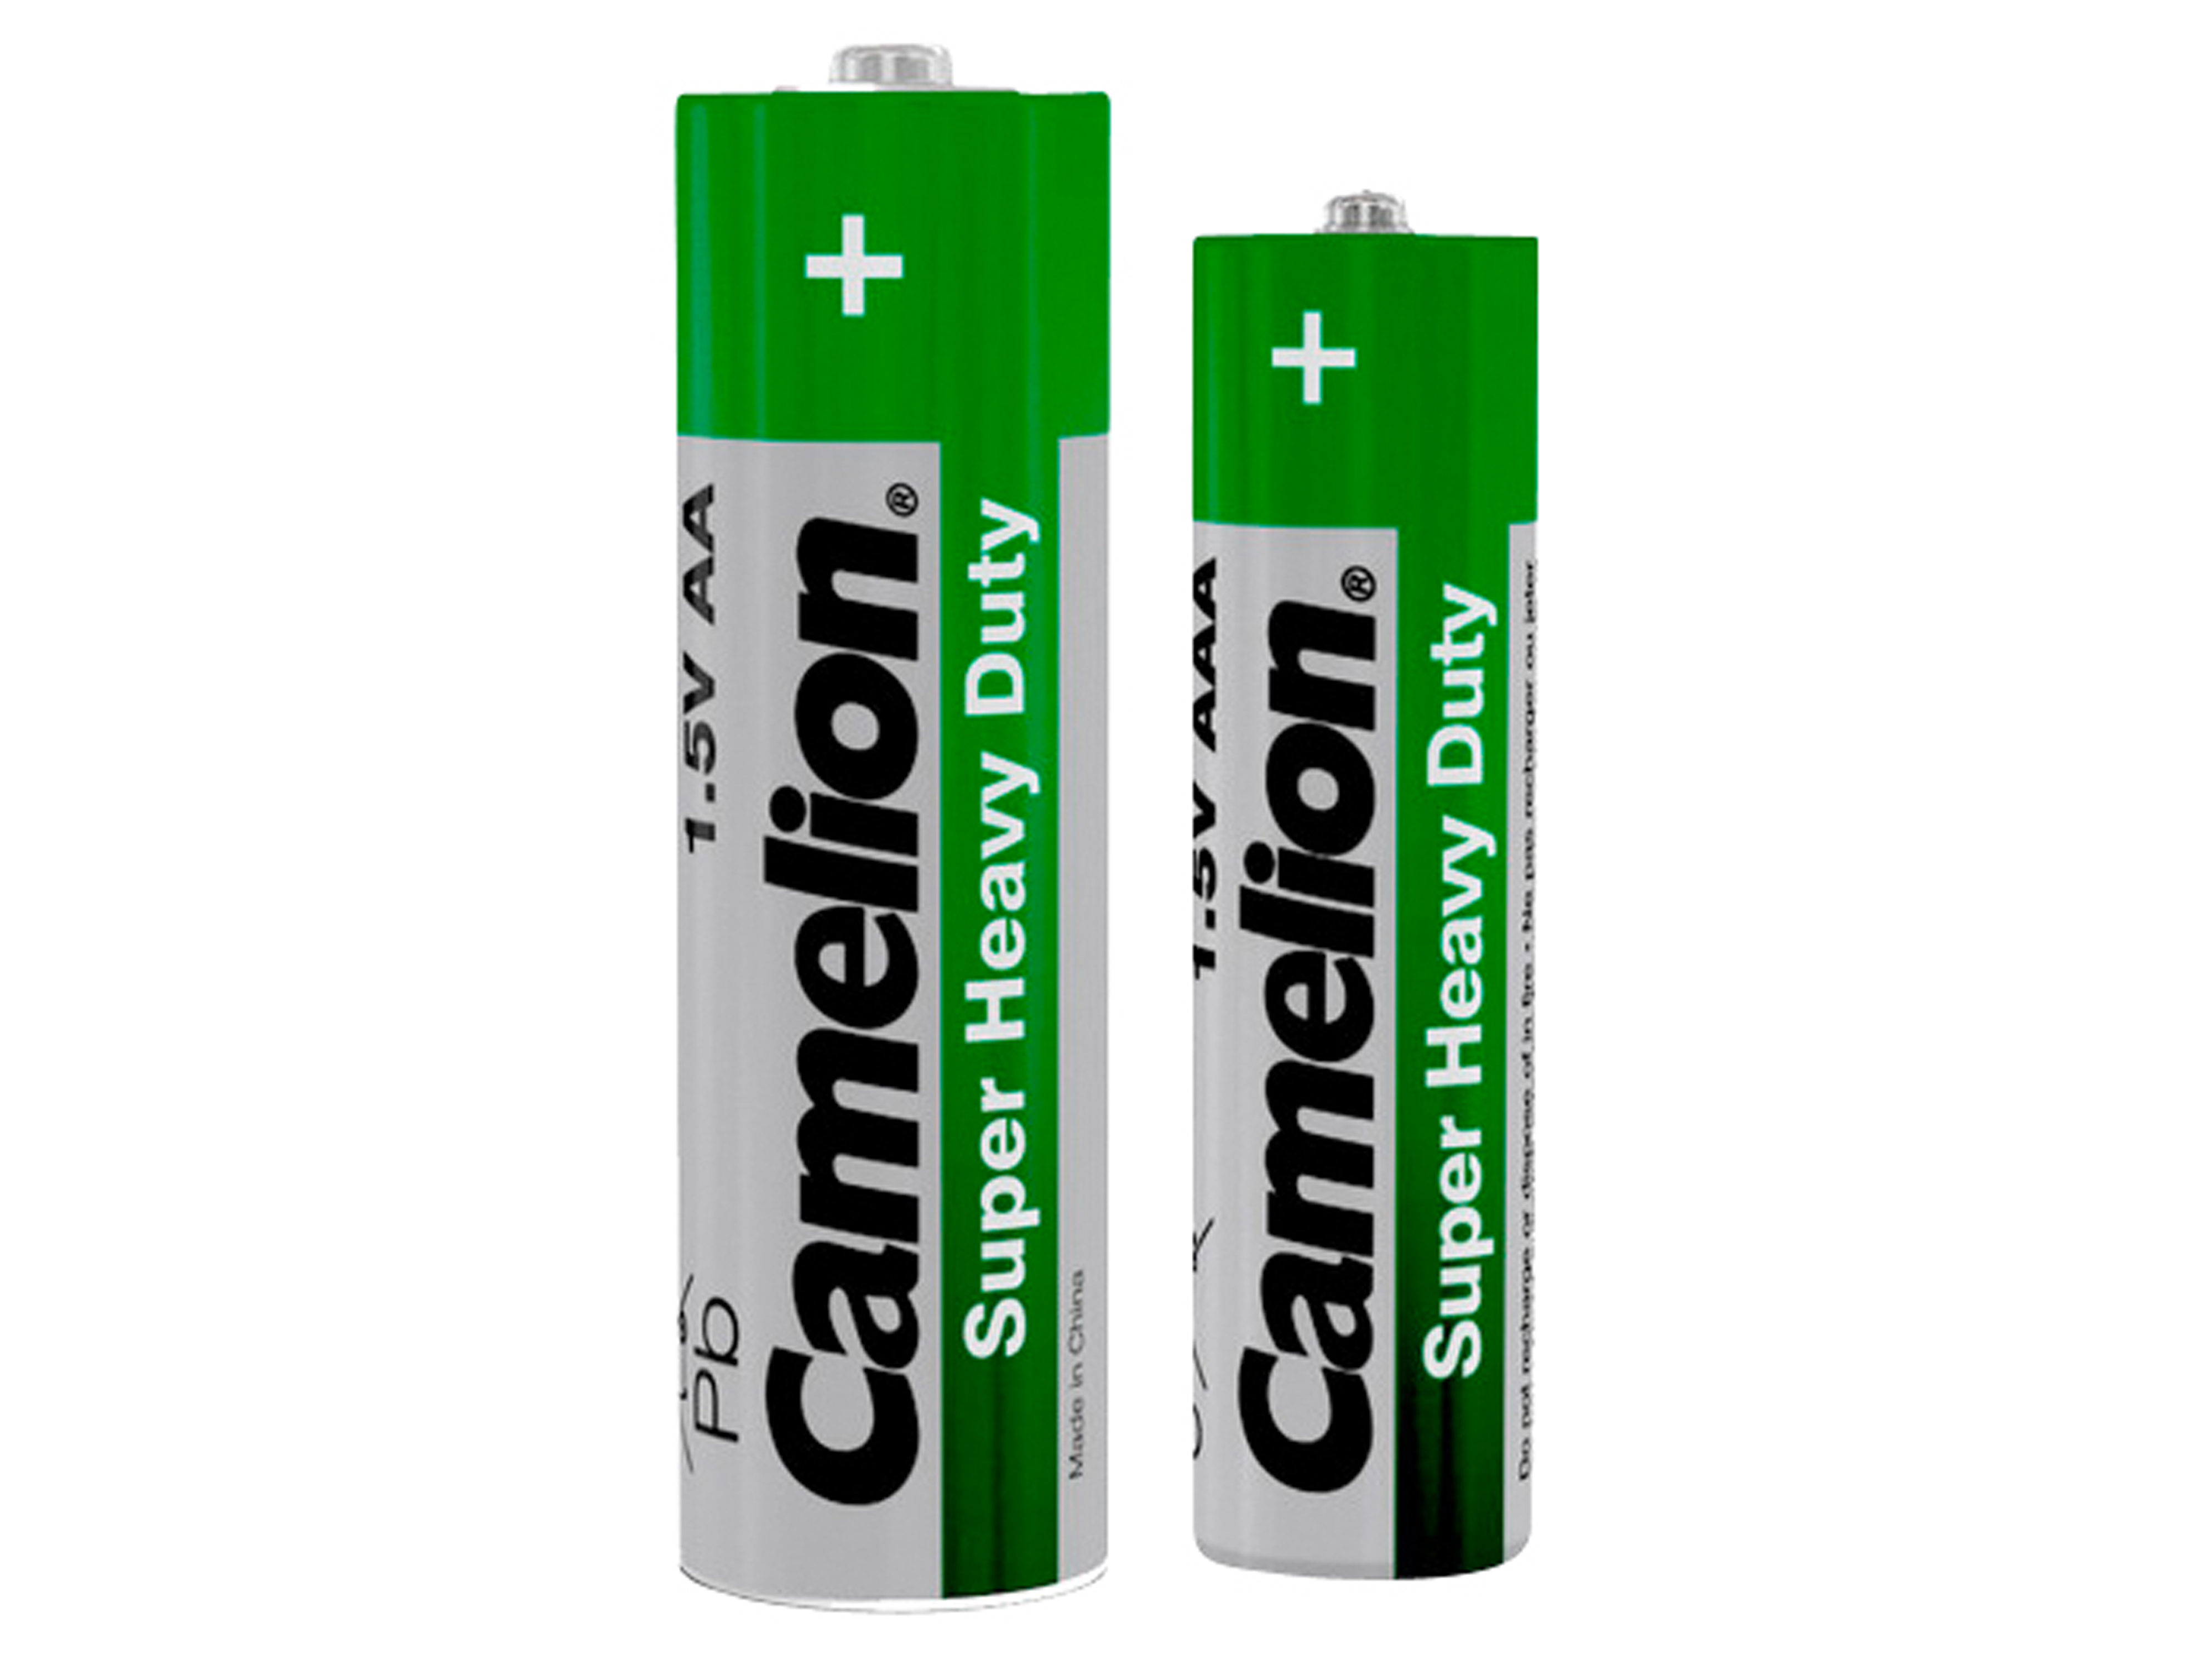 CAMELION Batterie-Set FPG-GB72, 72 St., Zink-Kohle Grün, 36x Mignon, 36x Micro